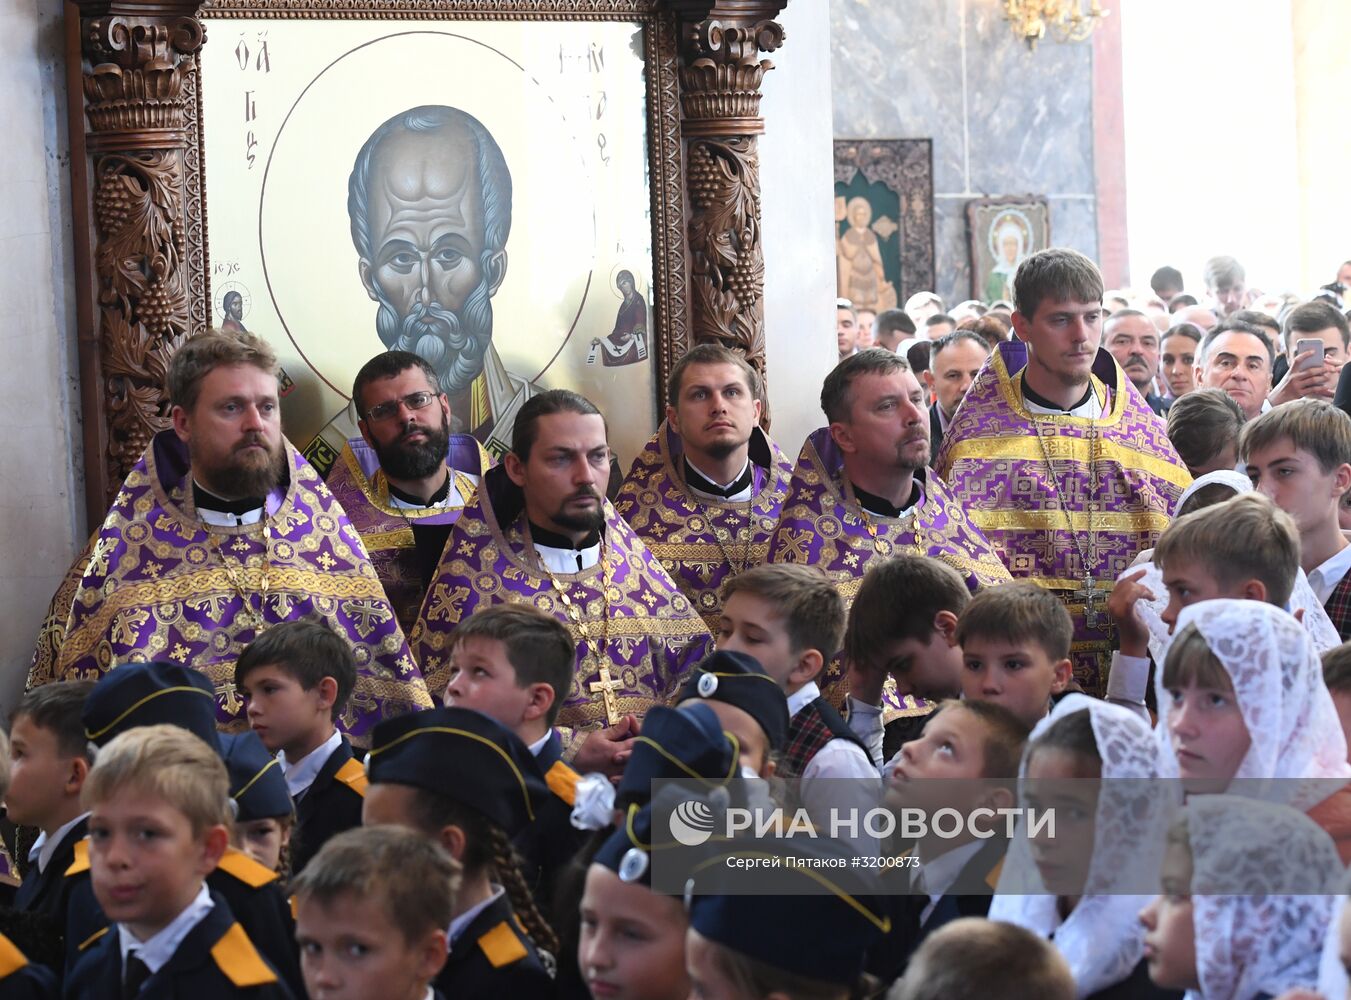 Рабочая поездка патриарха Кирилла в Астрахань. День второй